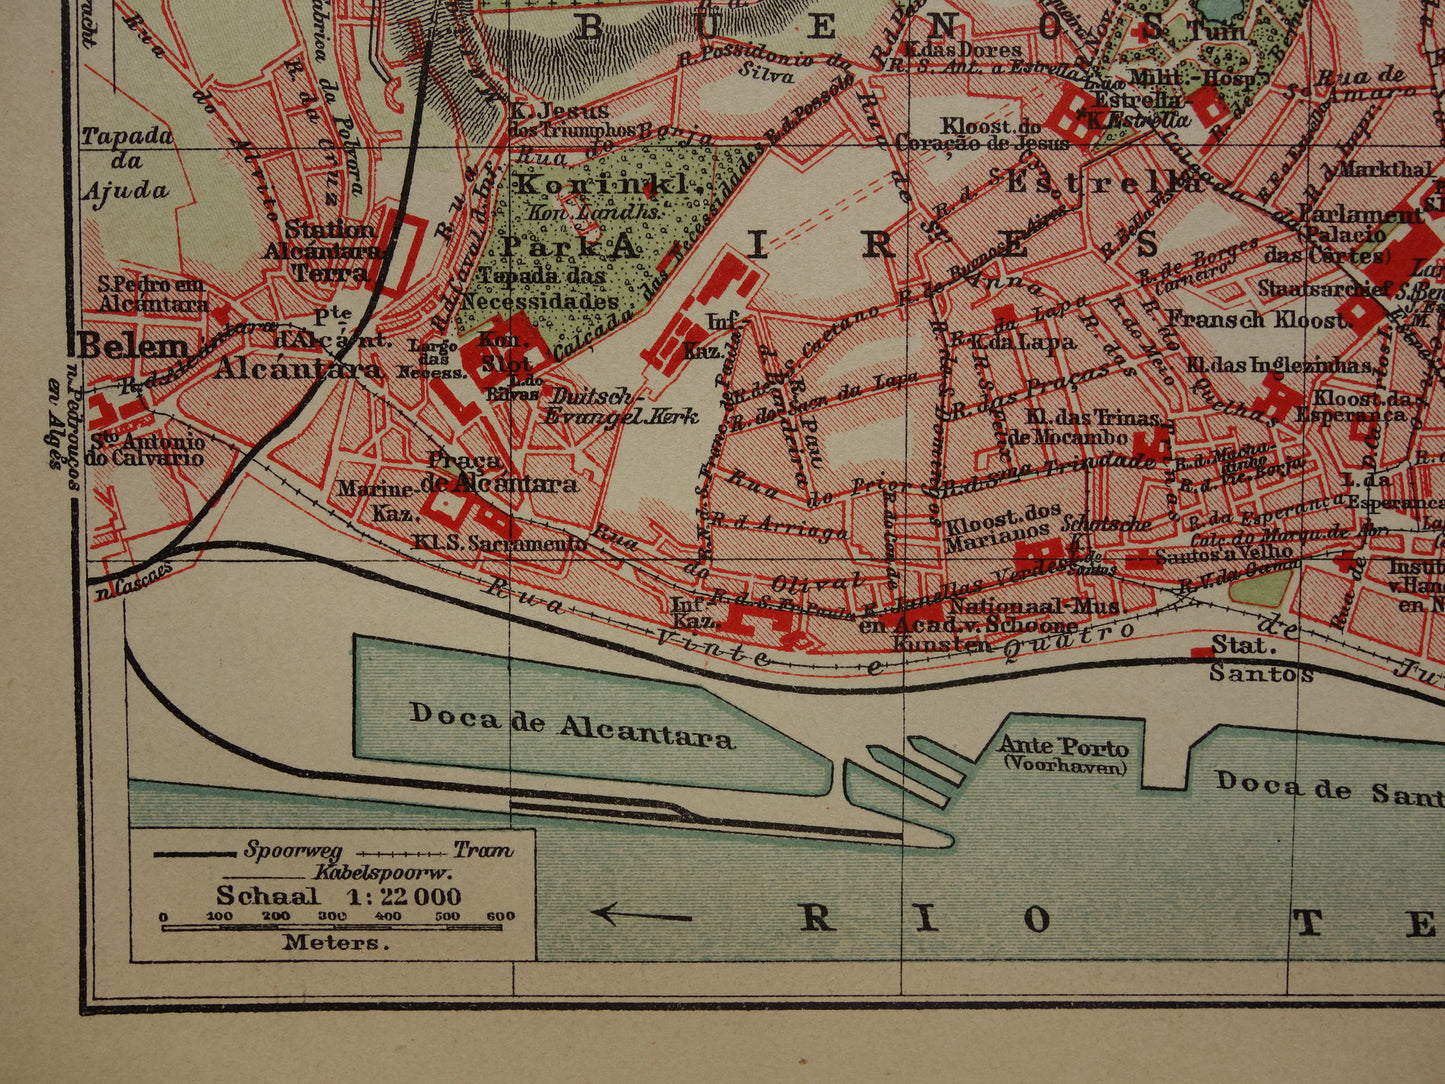 LISSABON oude kaart van Lissabon Portugal uit 1909 originele antieke plattegrond vintage landkaart